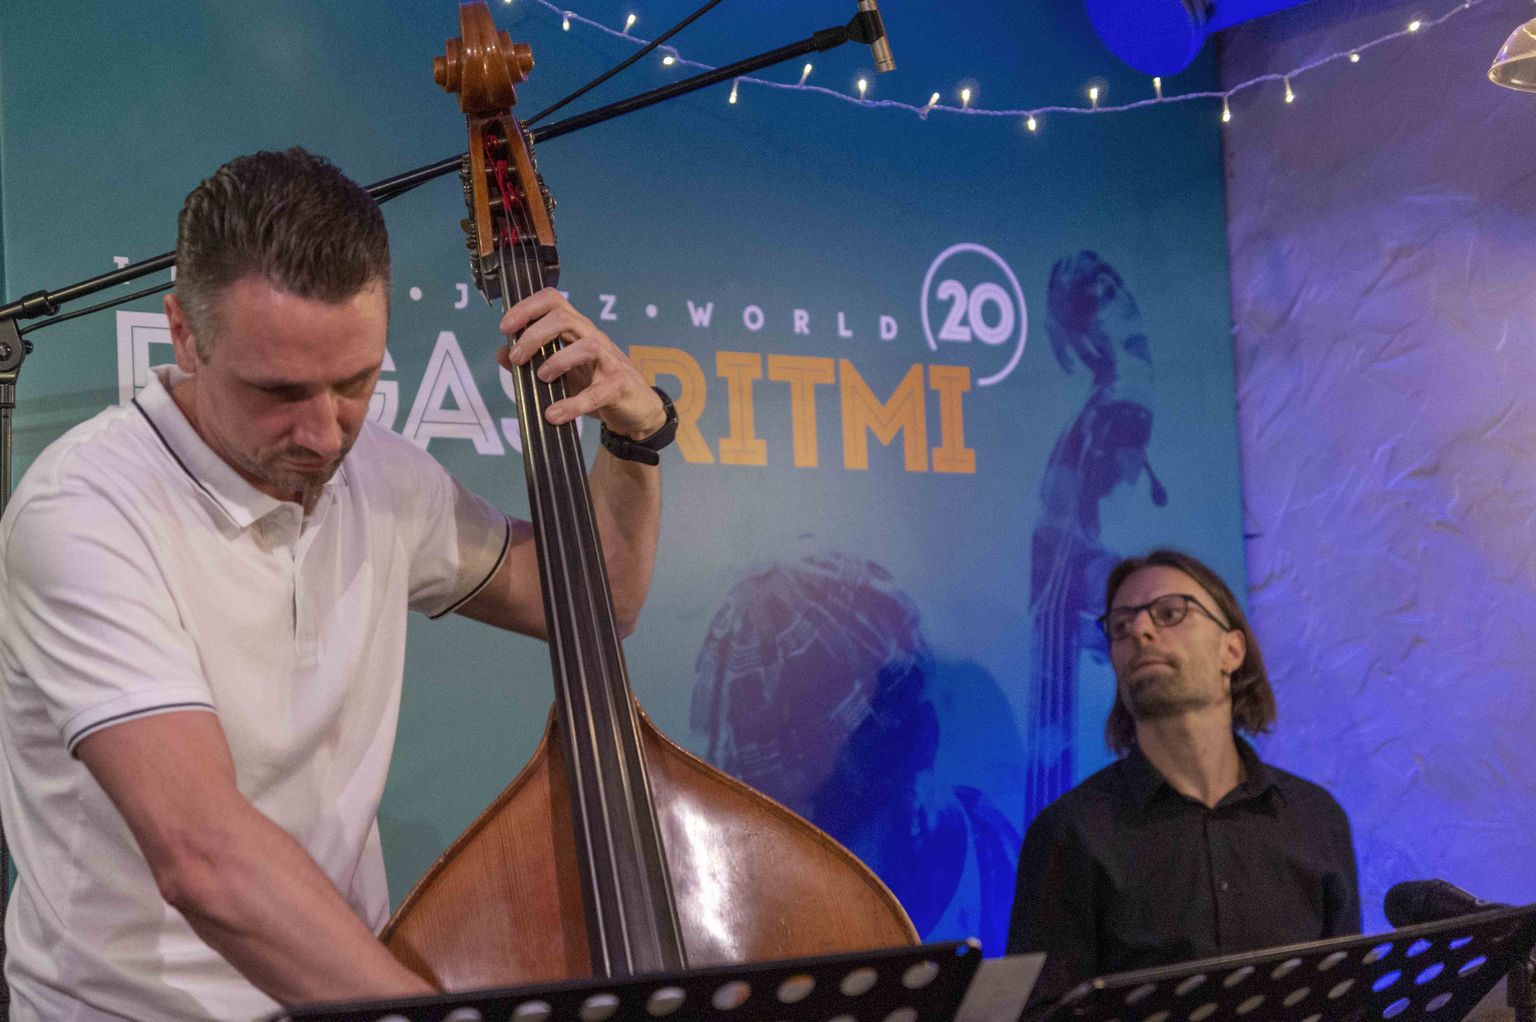 Noslēdzas festivāla "Rīgas ritmi" vasaras koncerti – trešā diena